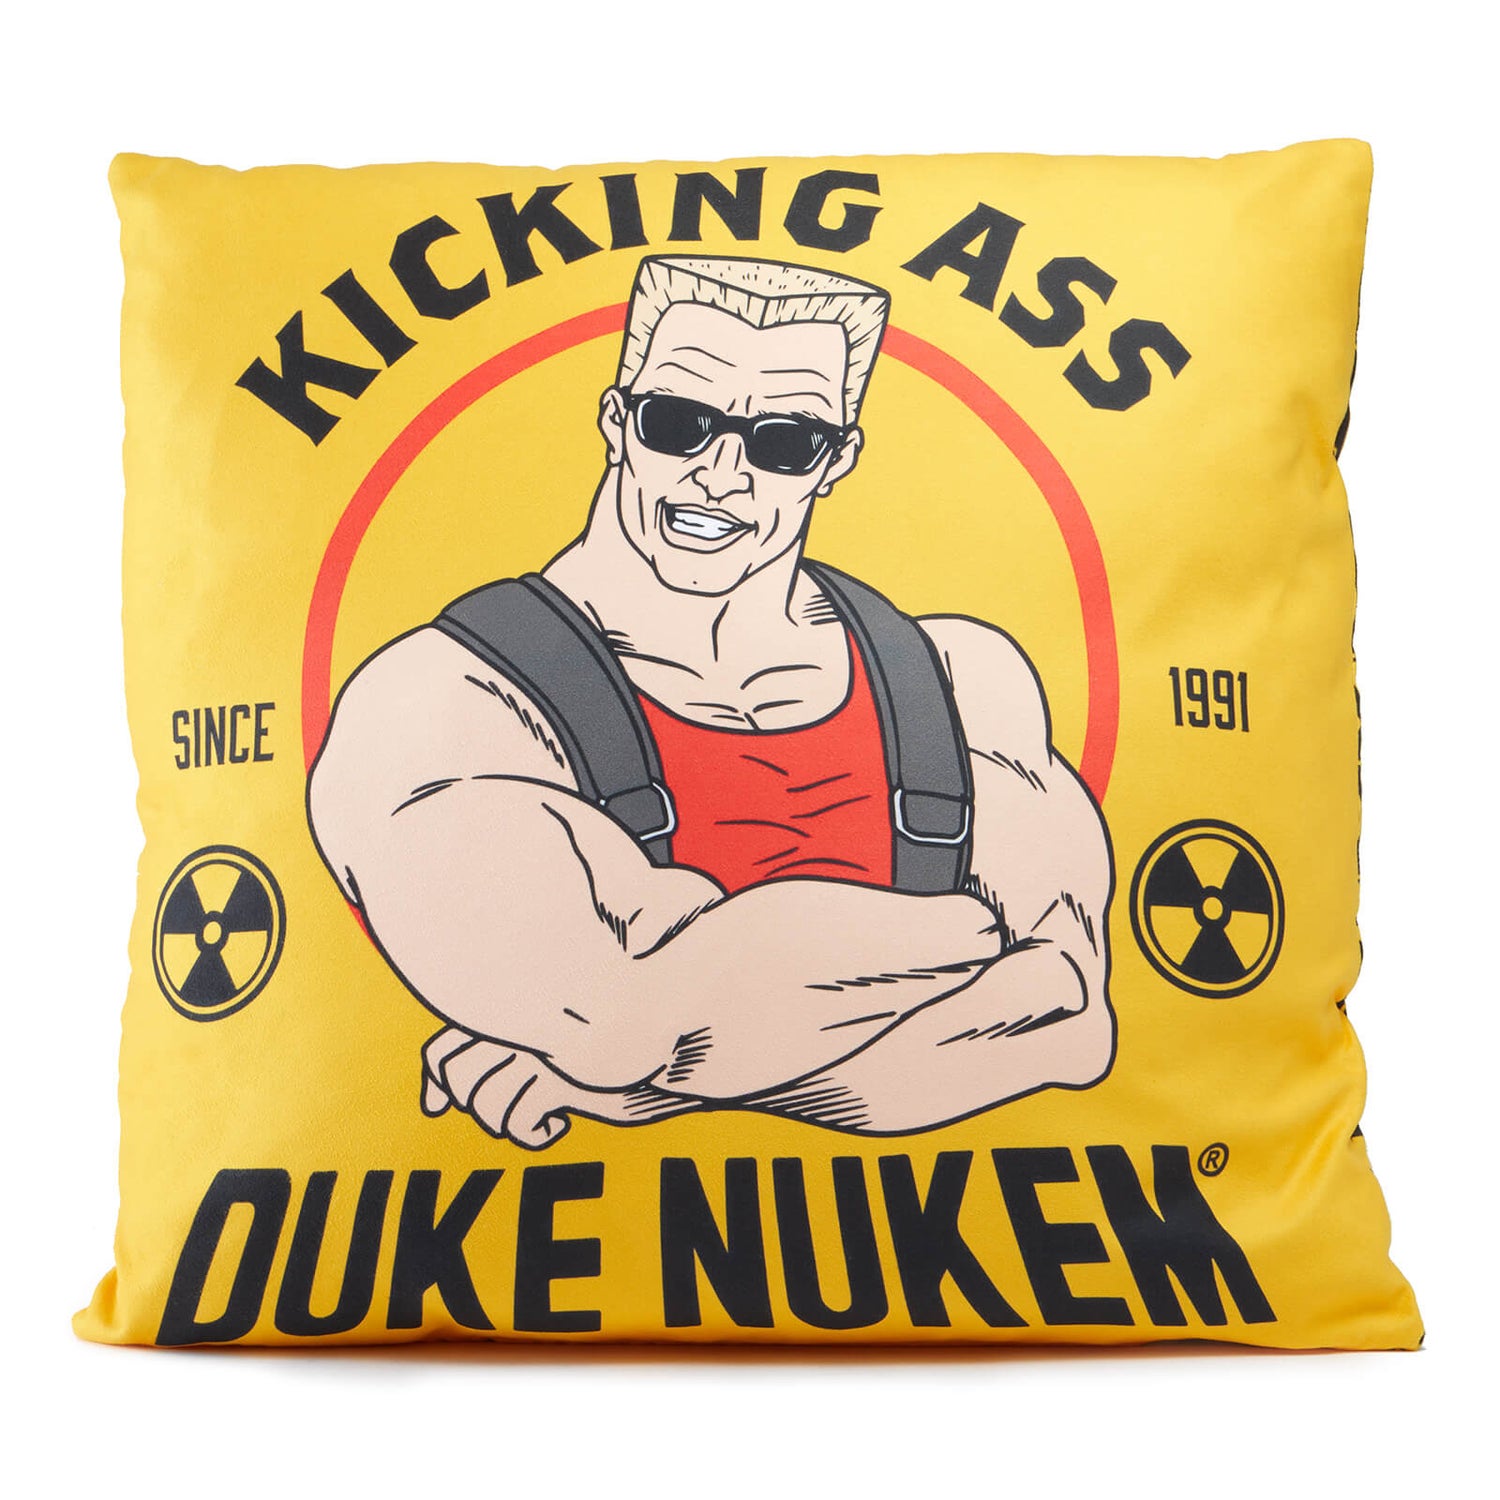 Duke Nukem Kicking Ass Since 1991 Square Cushion